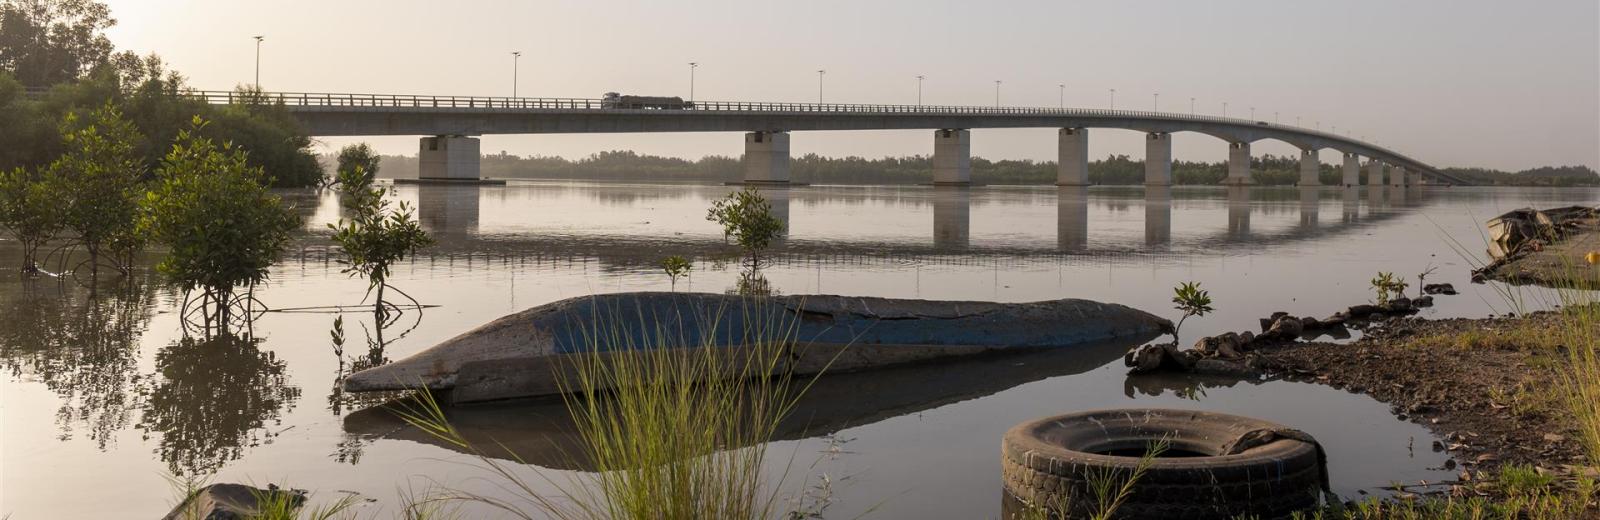 La gestione integrata delle risorse idriche del fiume Gambia per lo sviluppo sostenibile della regione è una questione transfrontaliera © DSC 